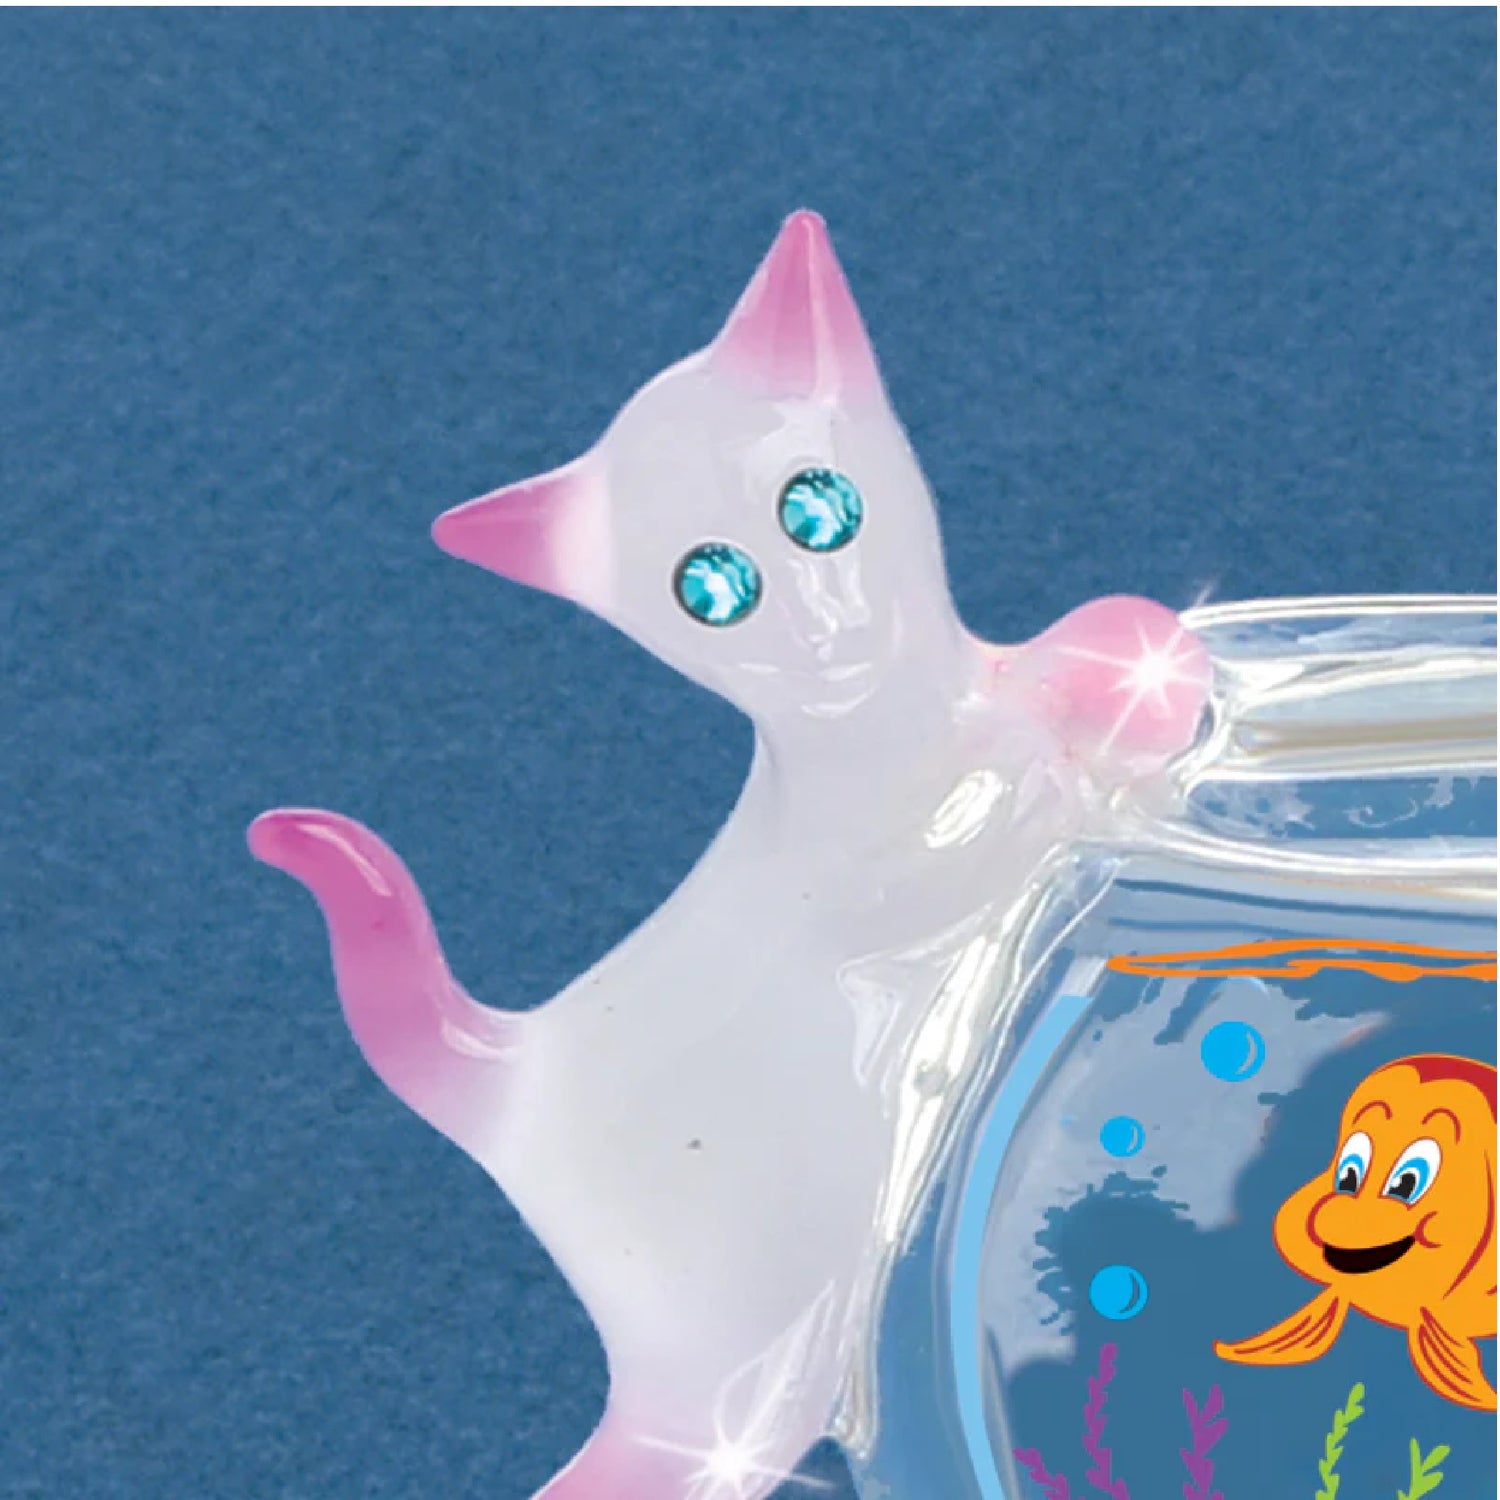 Glass Baron Fishbowl Kitty Figure